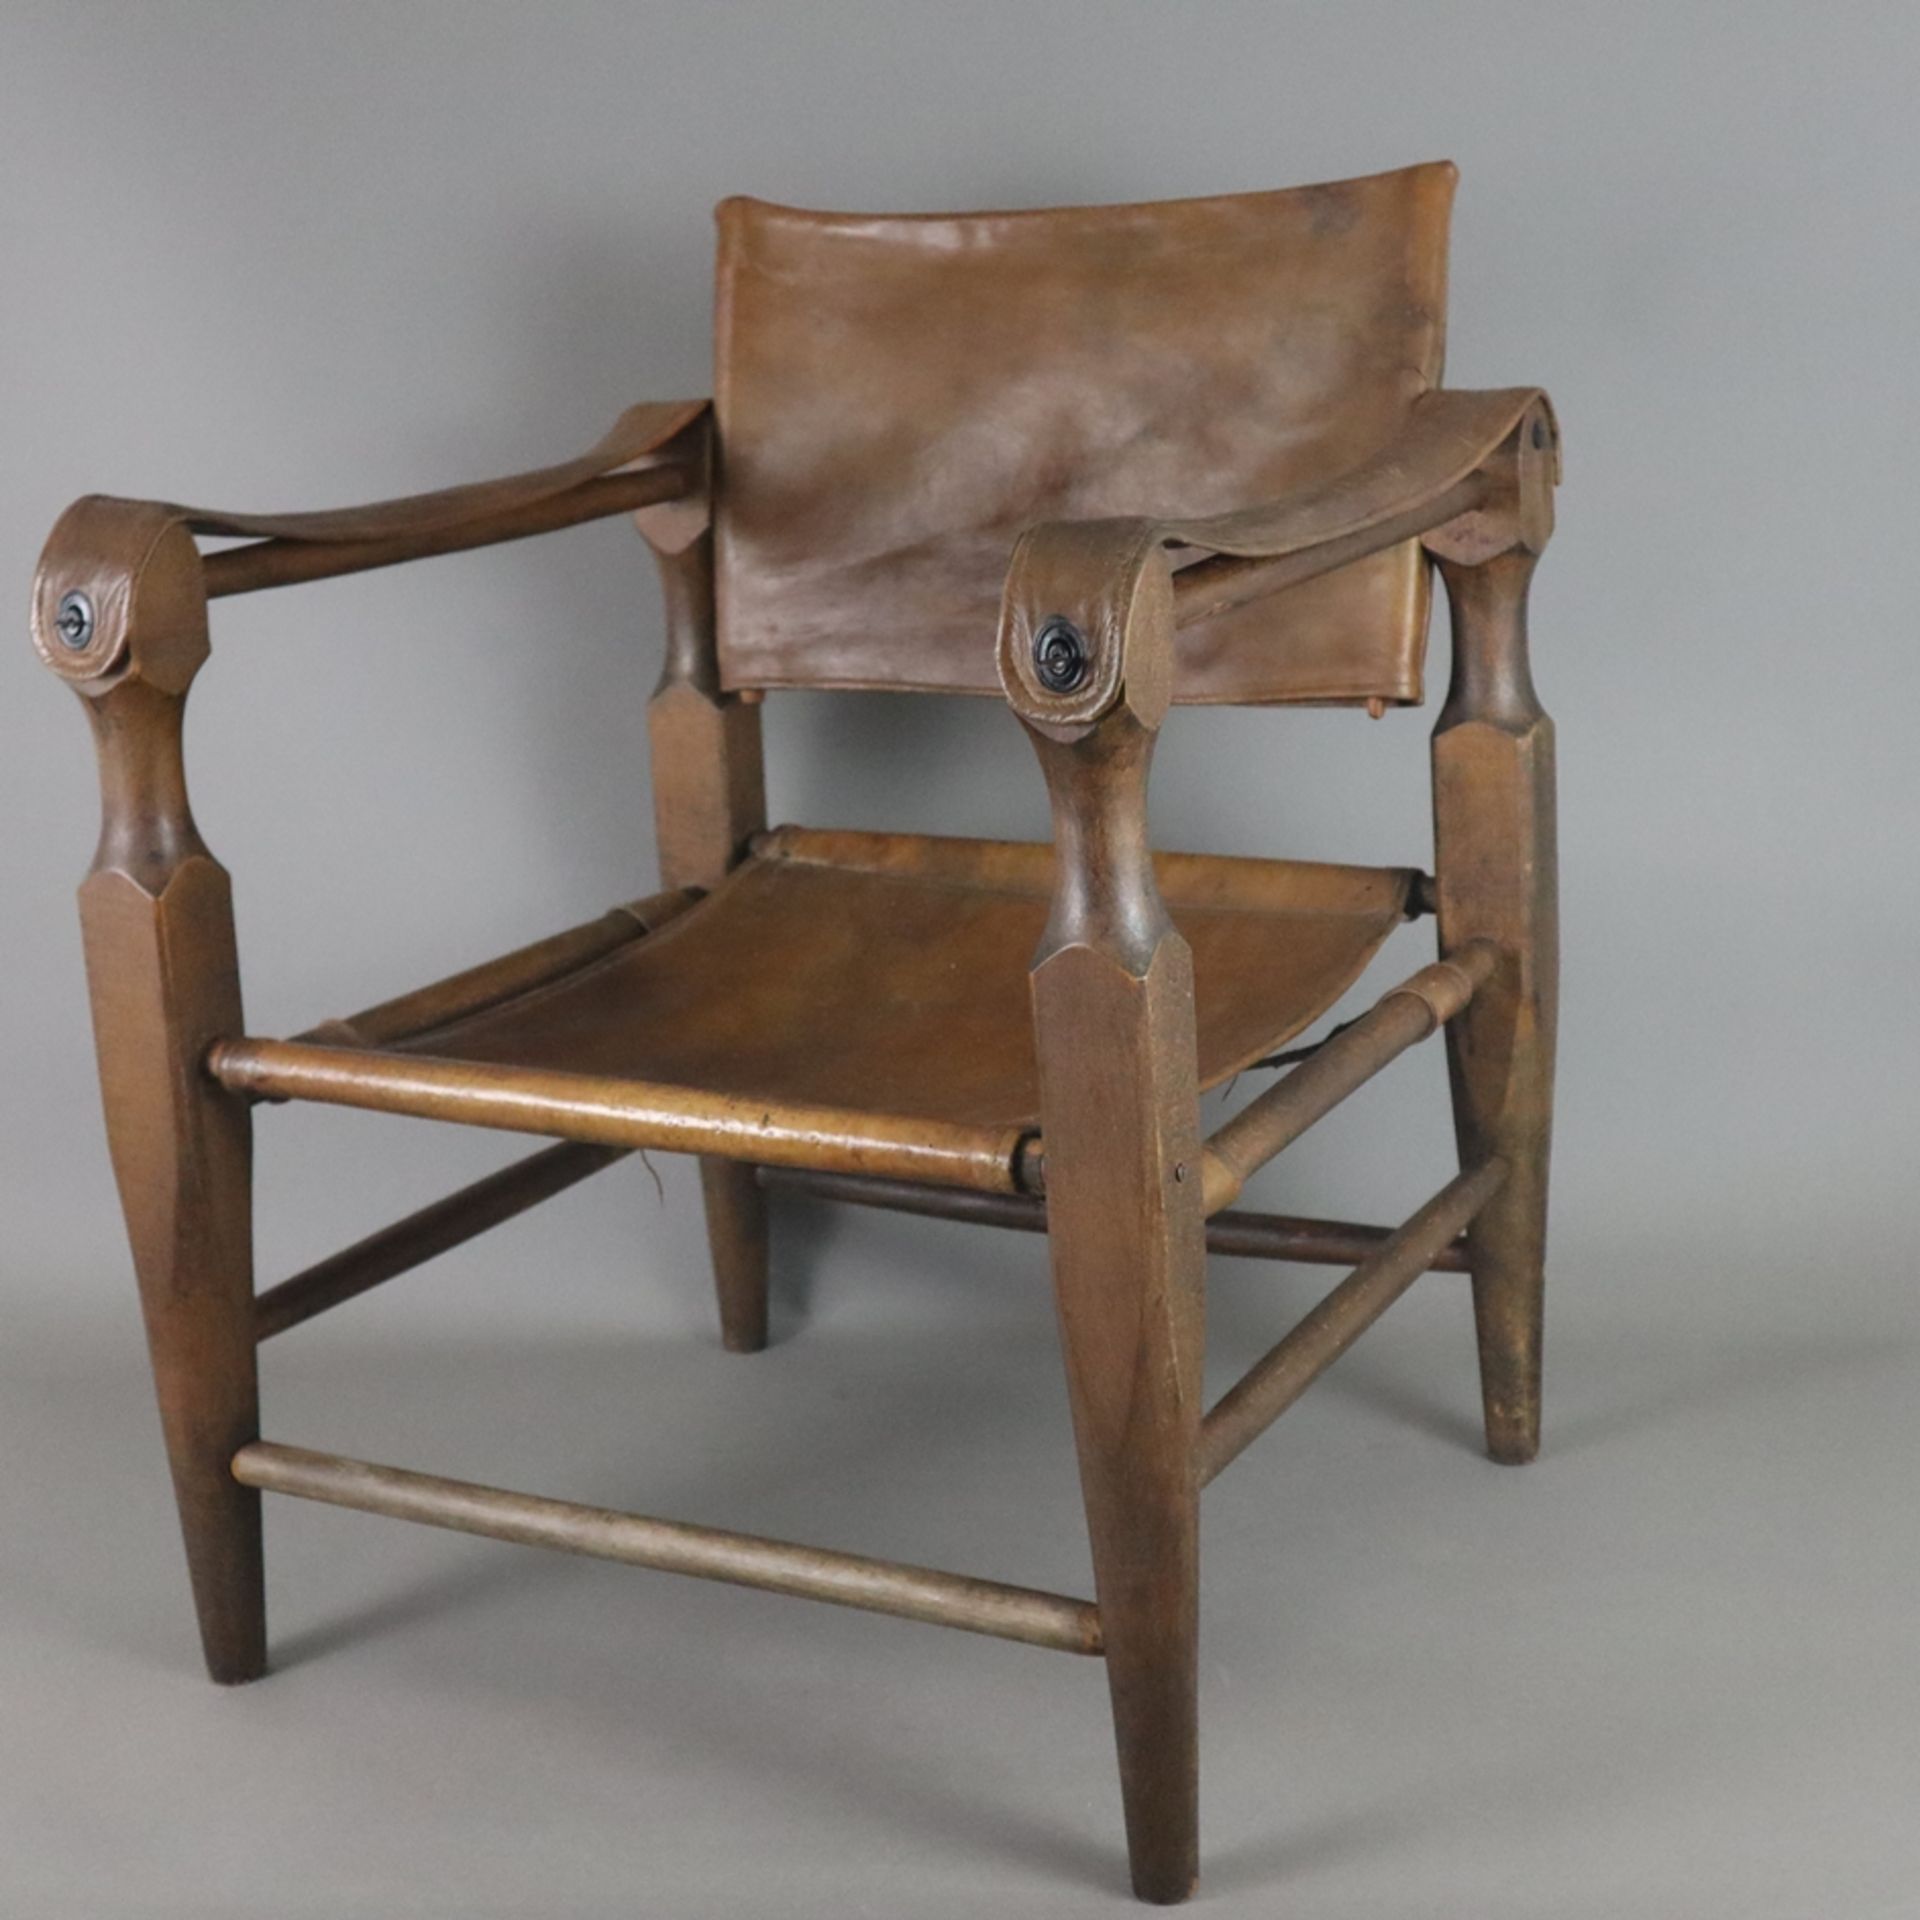 Armlehnstuhl "Safari-Chair" - Entwurf: Wilhelm Kienzle (1928), Ausführung: Wohnbedarf, Zürich, 1960